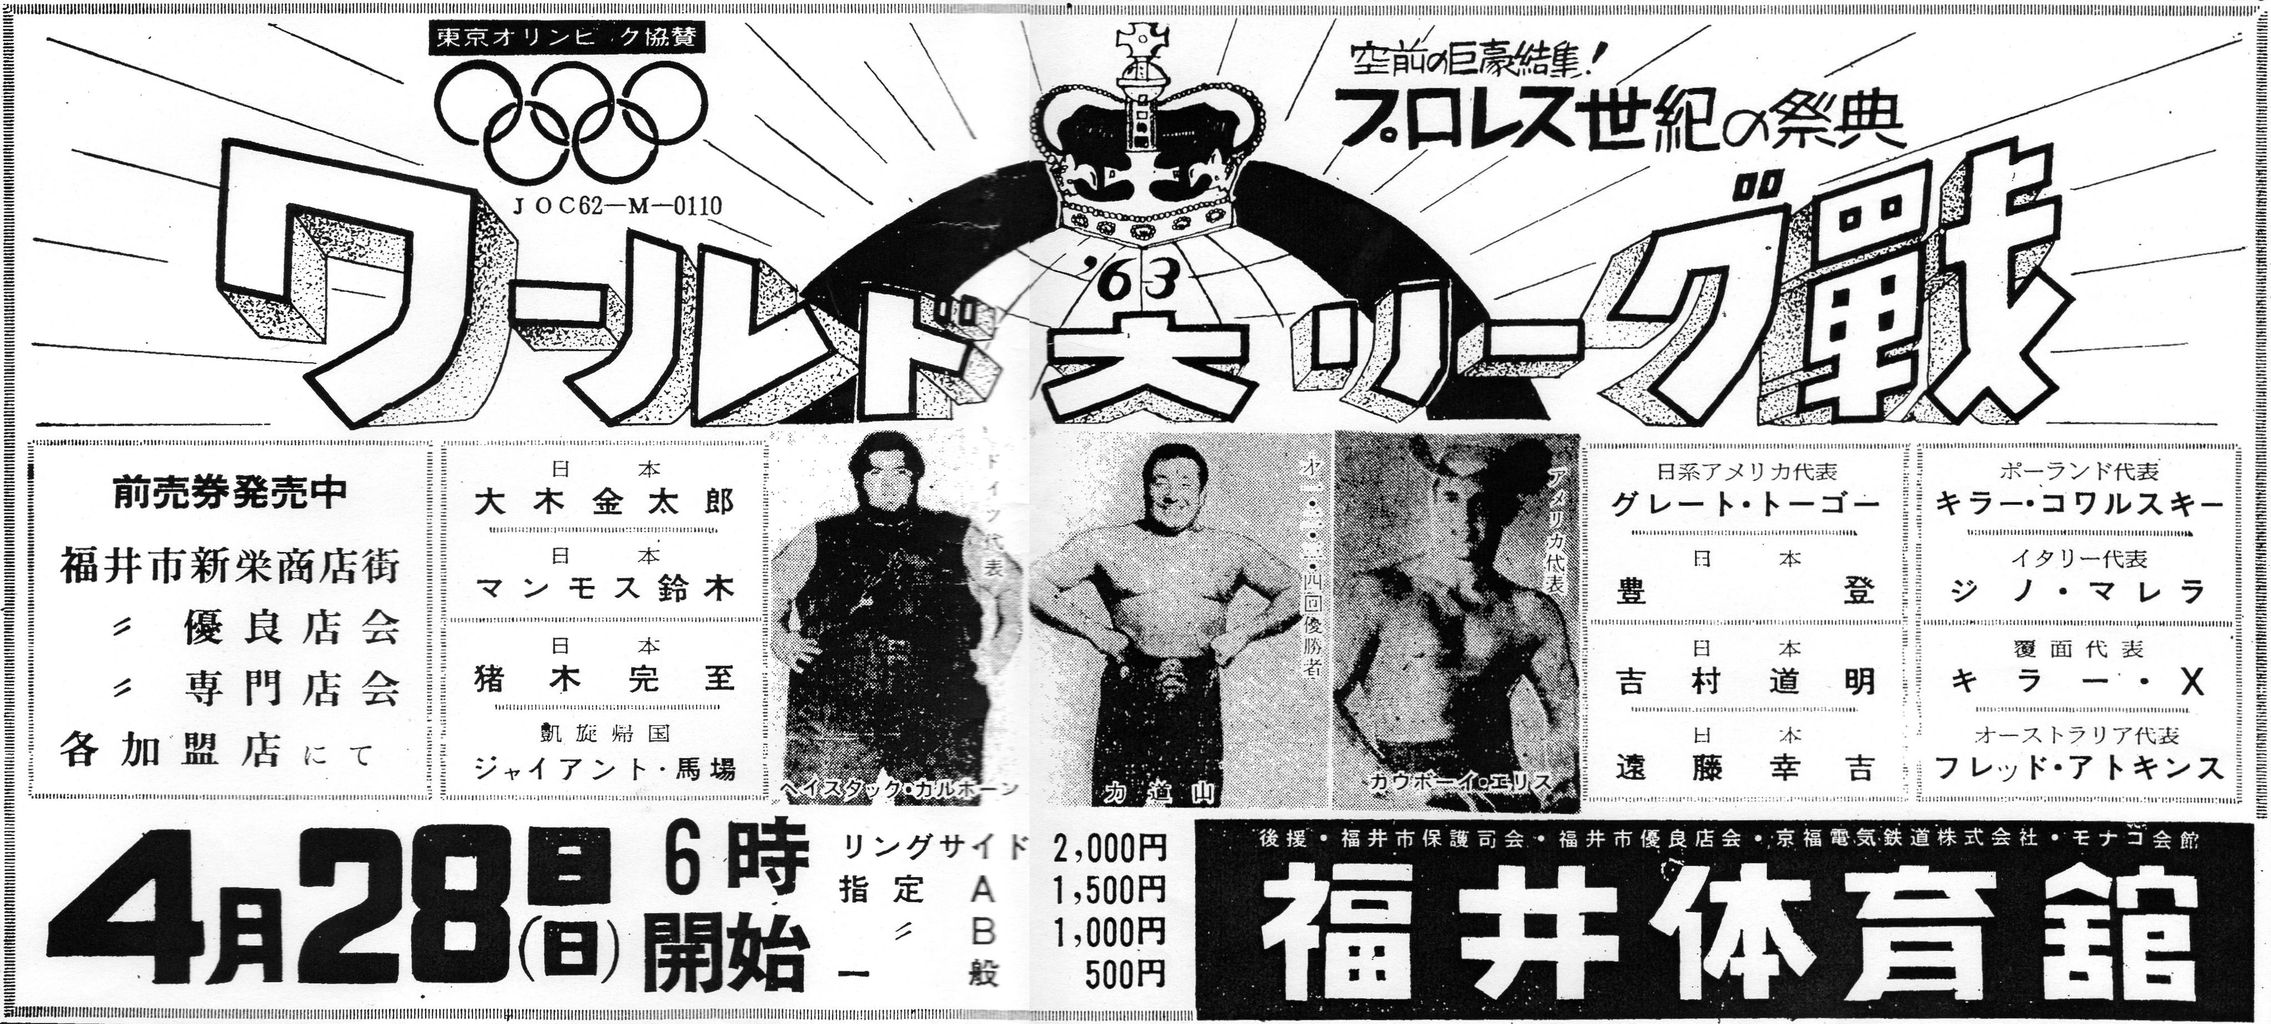 第５回ワールドリーグ戦日程 昭和プロレス激闘史 その黎明期の研究